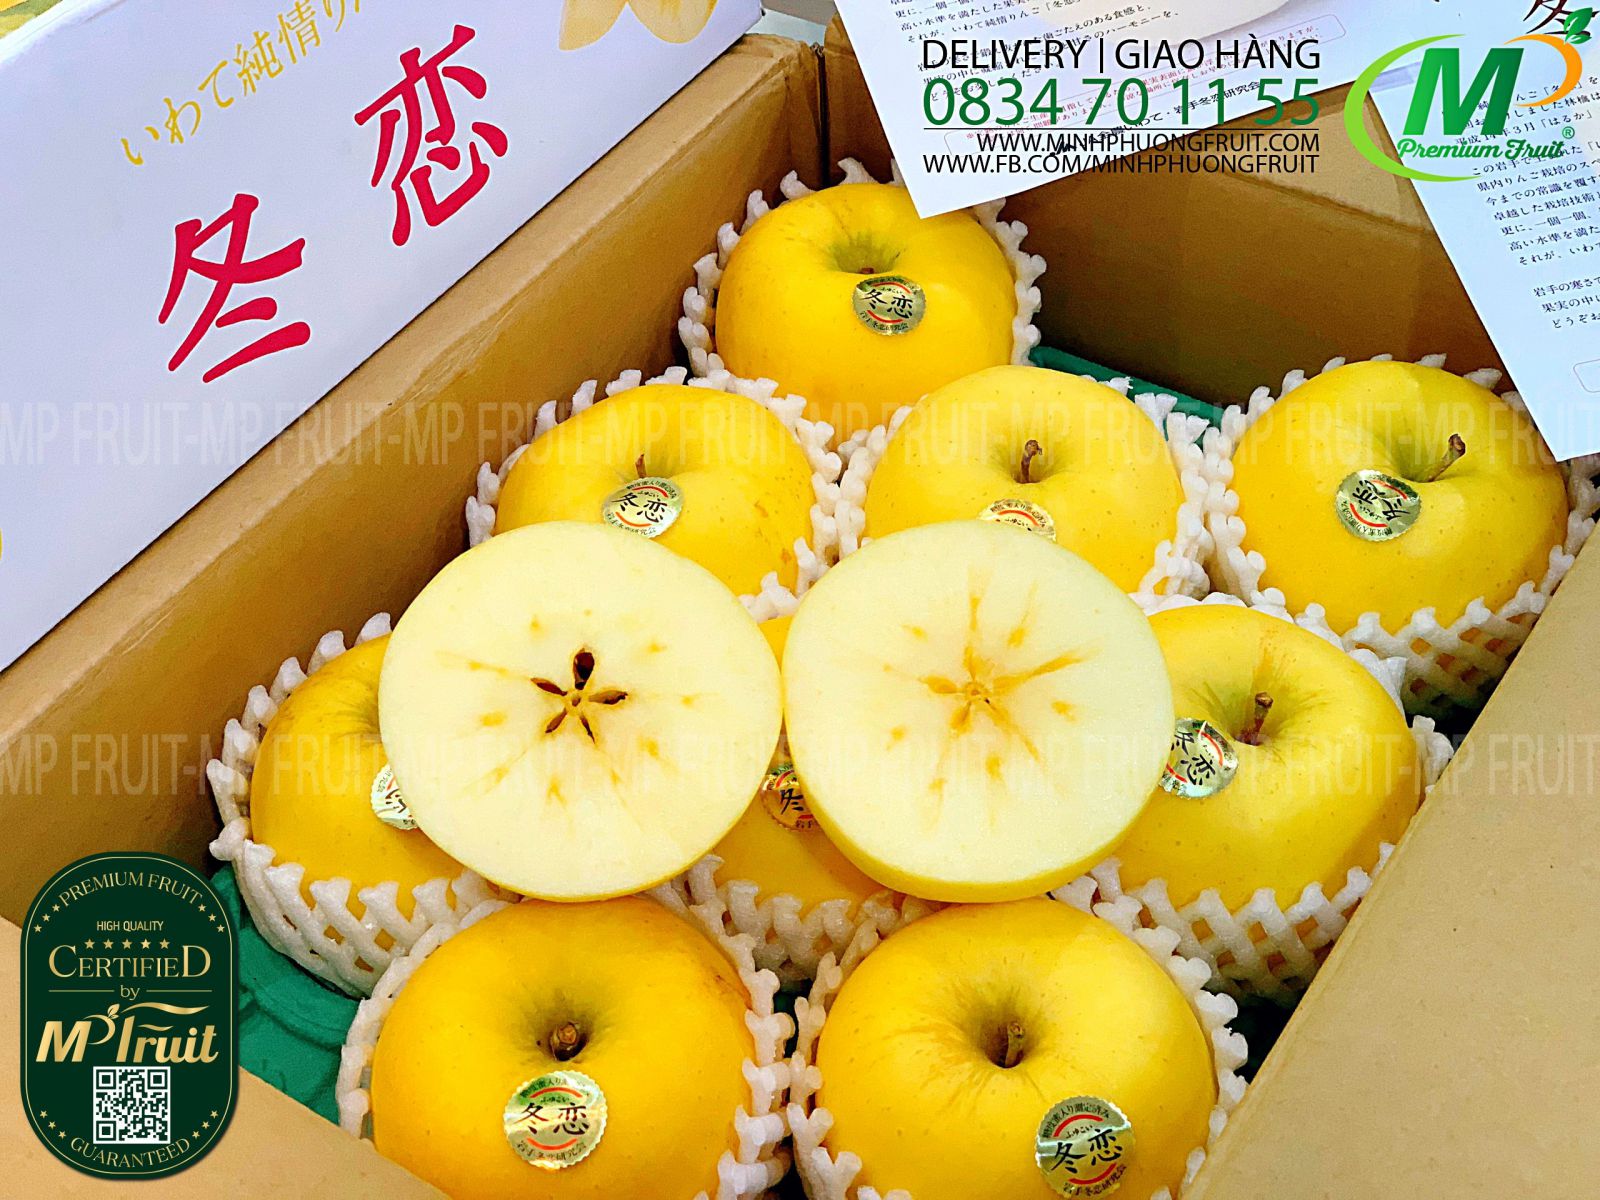 Táo Mật Vàng IWATE JUNJO Nhật Bản - Táo Mật Vàng Haruka Nhật Bản tại MP Fruit